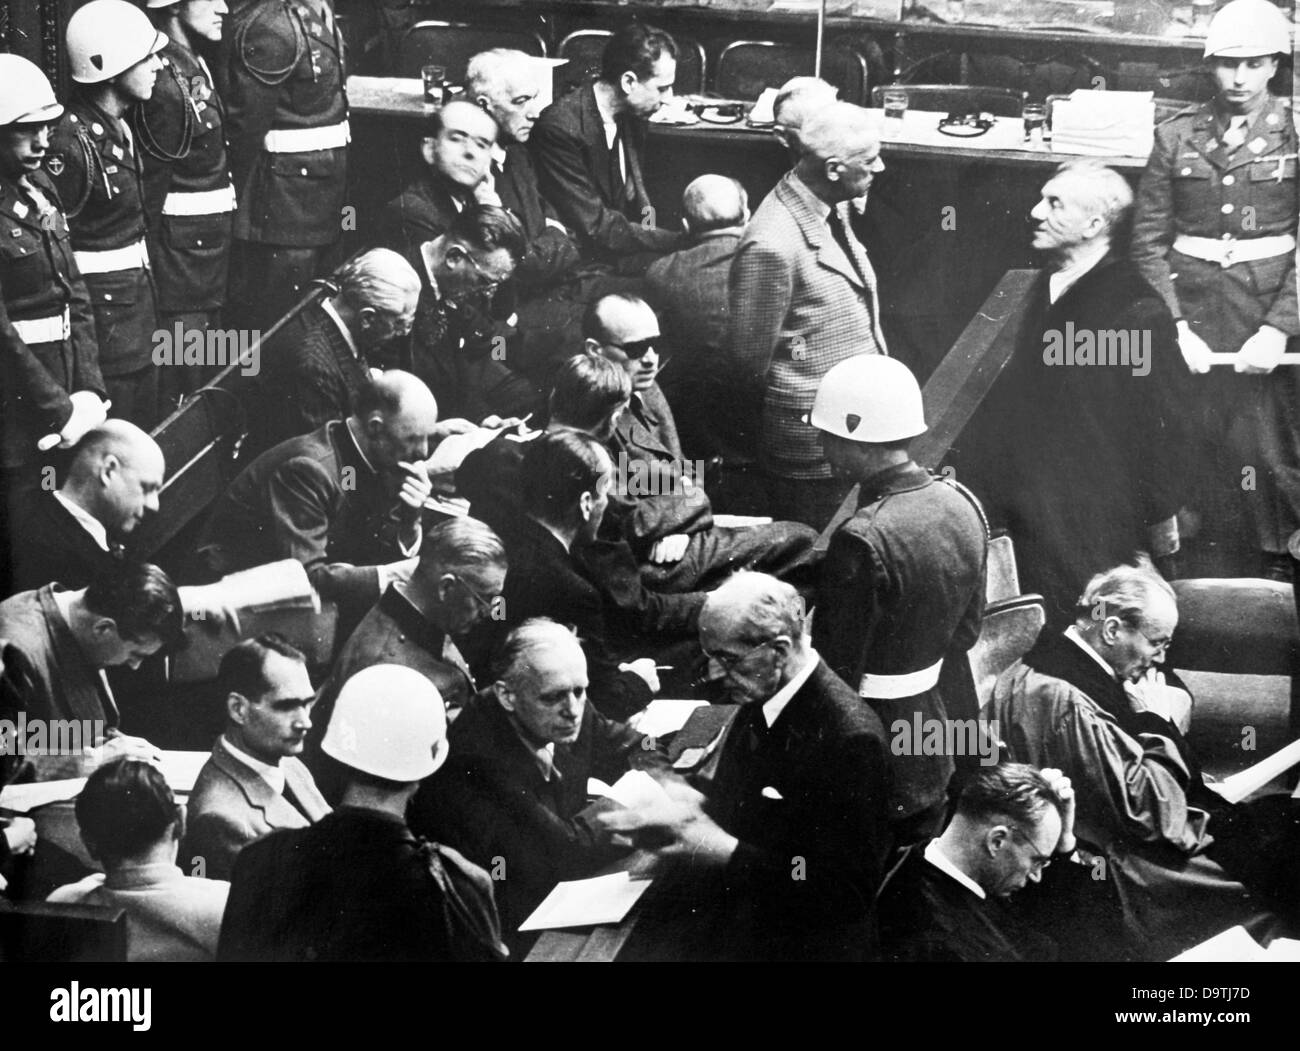 Militärpolizei sind um die Bank die ersten Angeklagten im Nürnberger Prozess im Kontext des Internationalen Militärgerichtshofs gegen die großen Kriegsverbrecher des zweiten Weltkriegs in Nürnberg, 1946 abgebildet. Foto: Jewgeni Chaldei Stockfoto